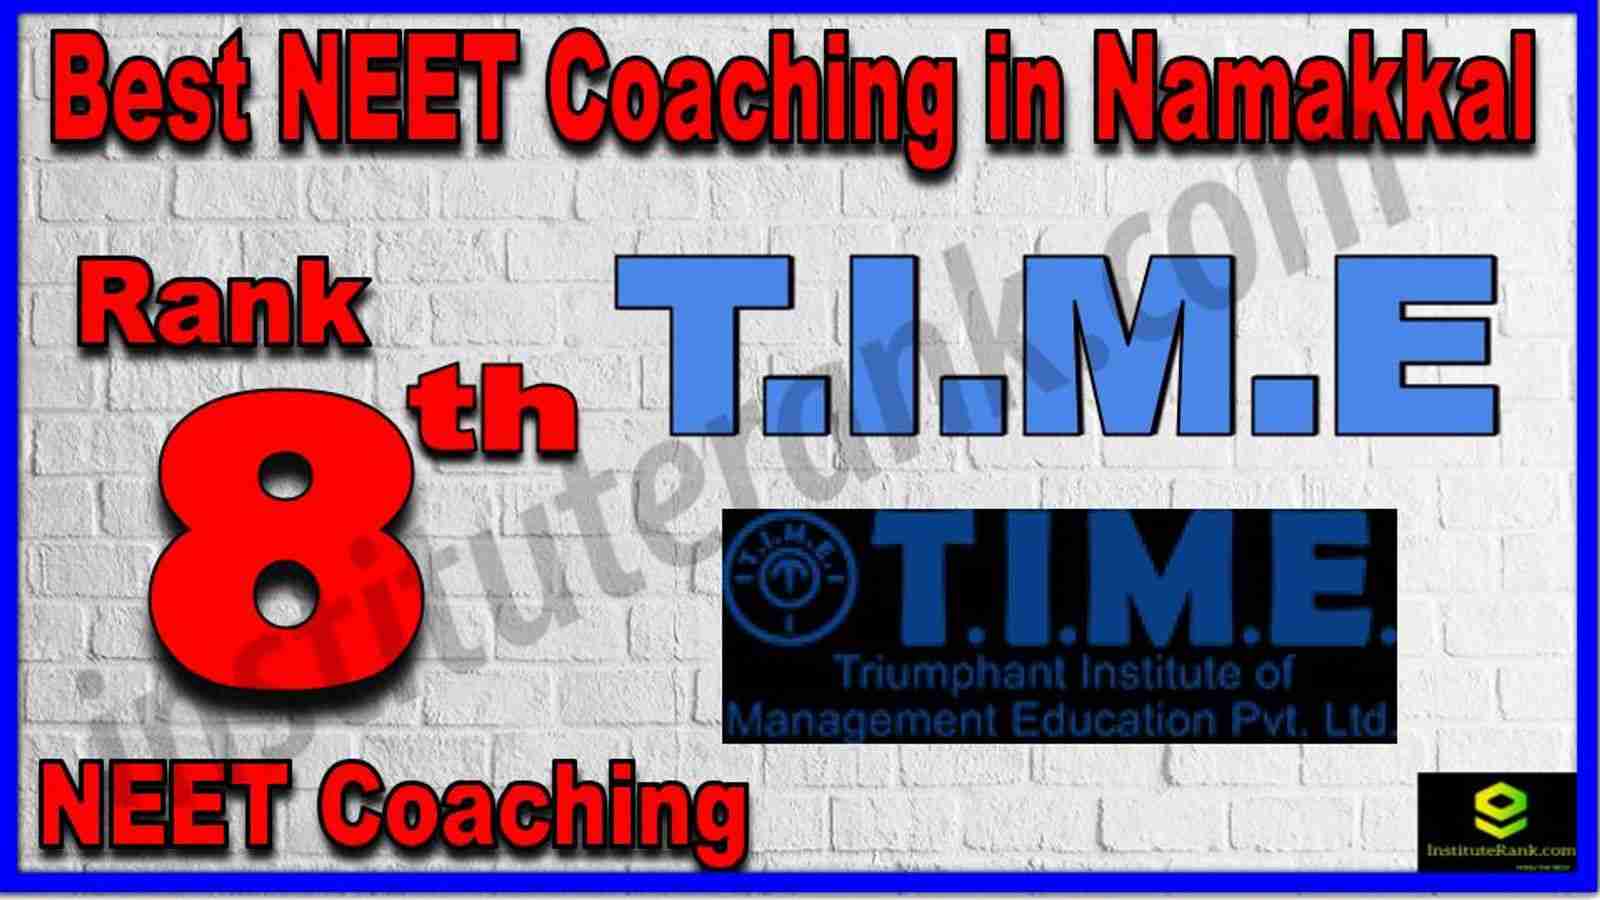 Rank 8th Best NEET Coaching in Namakkal